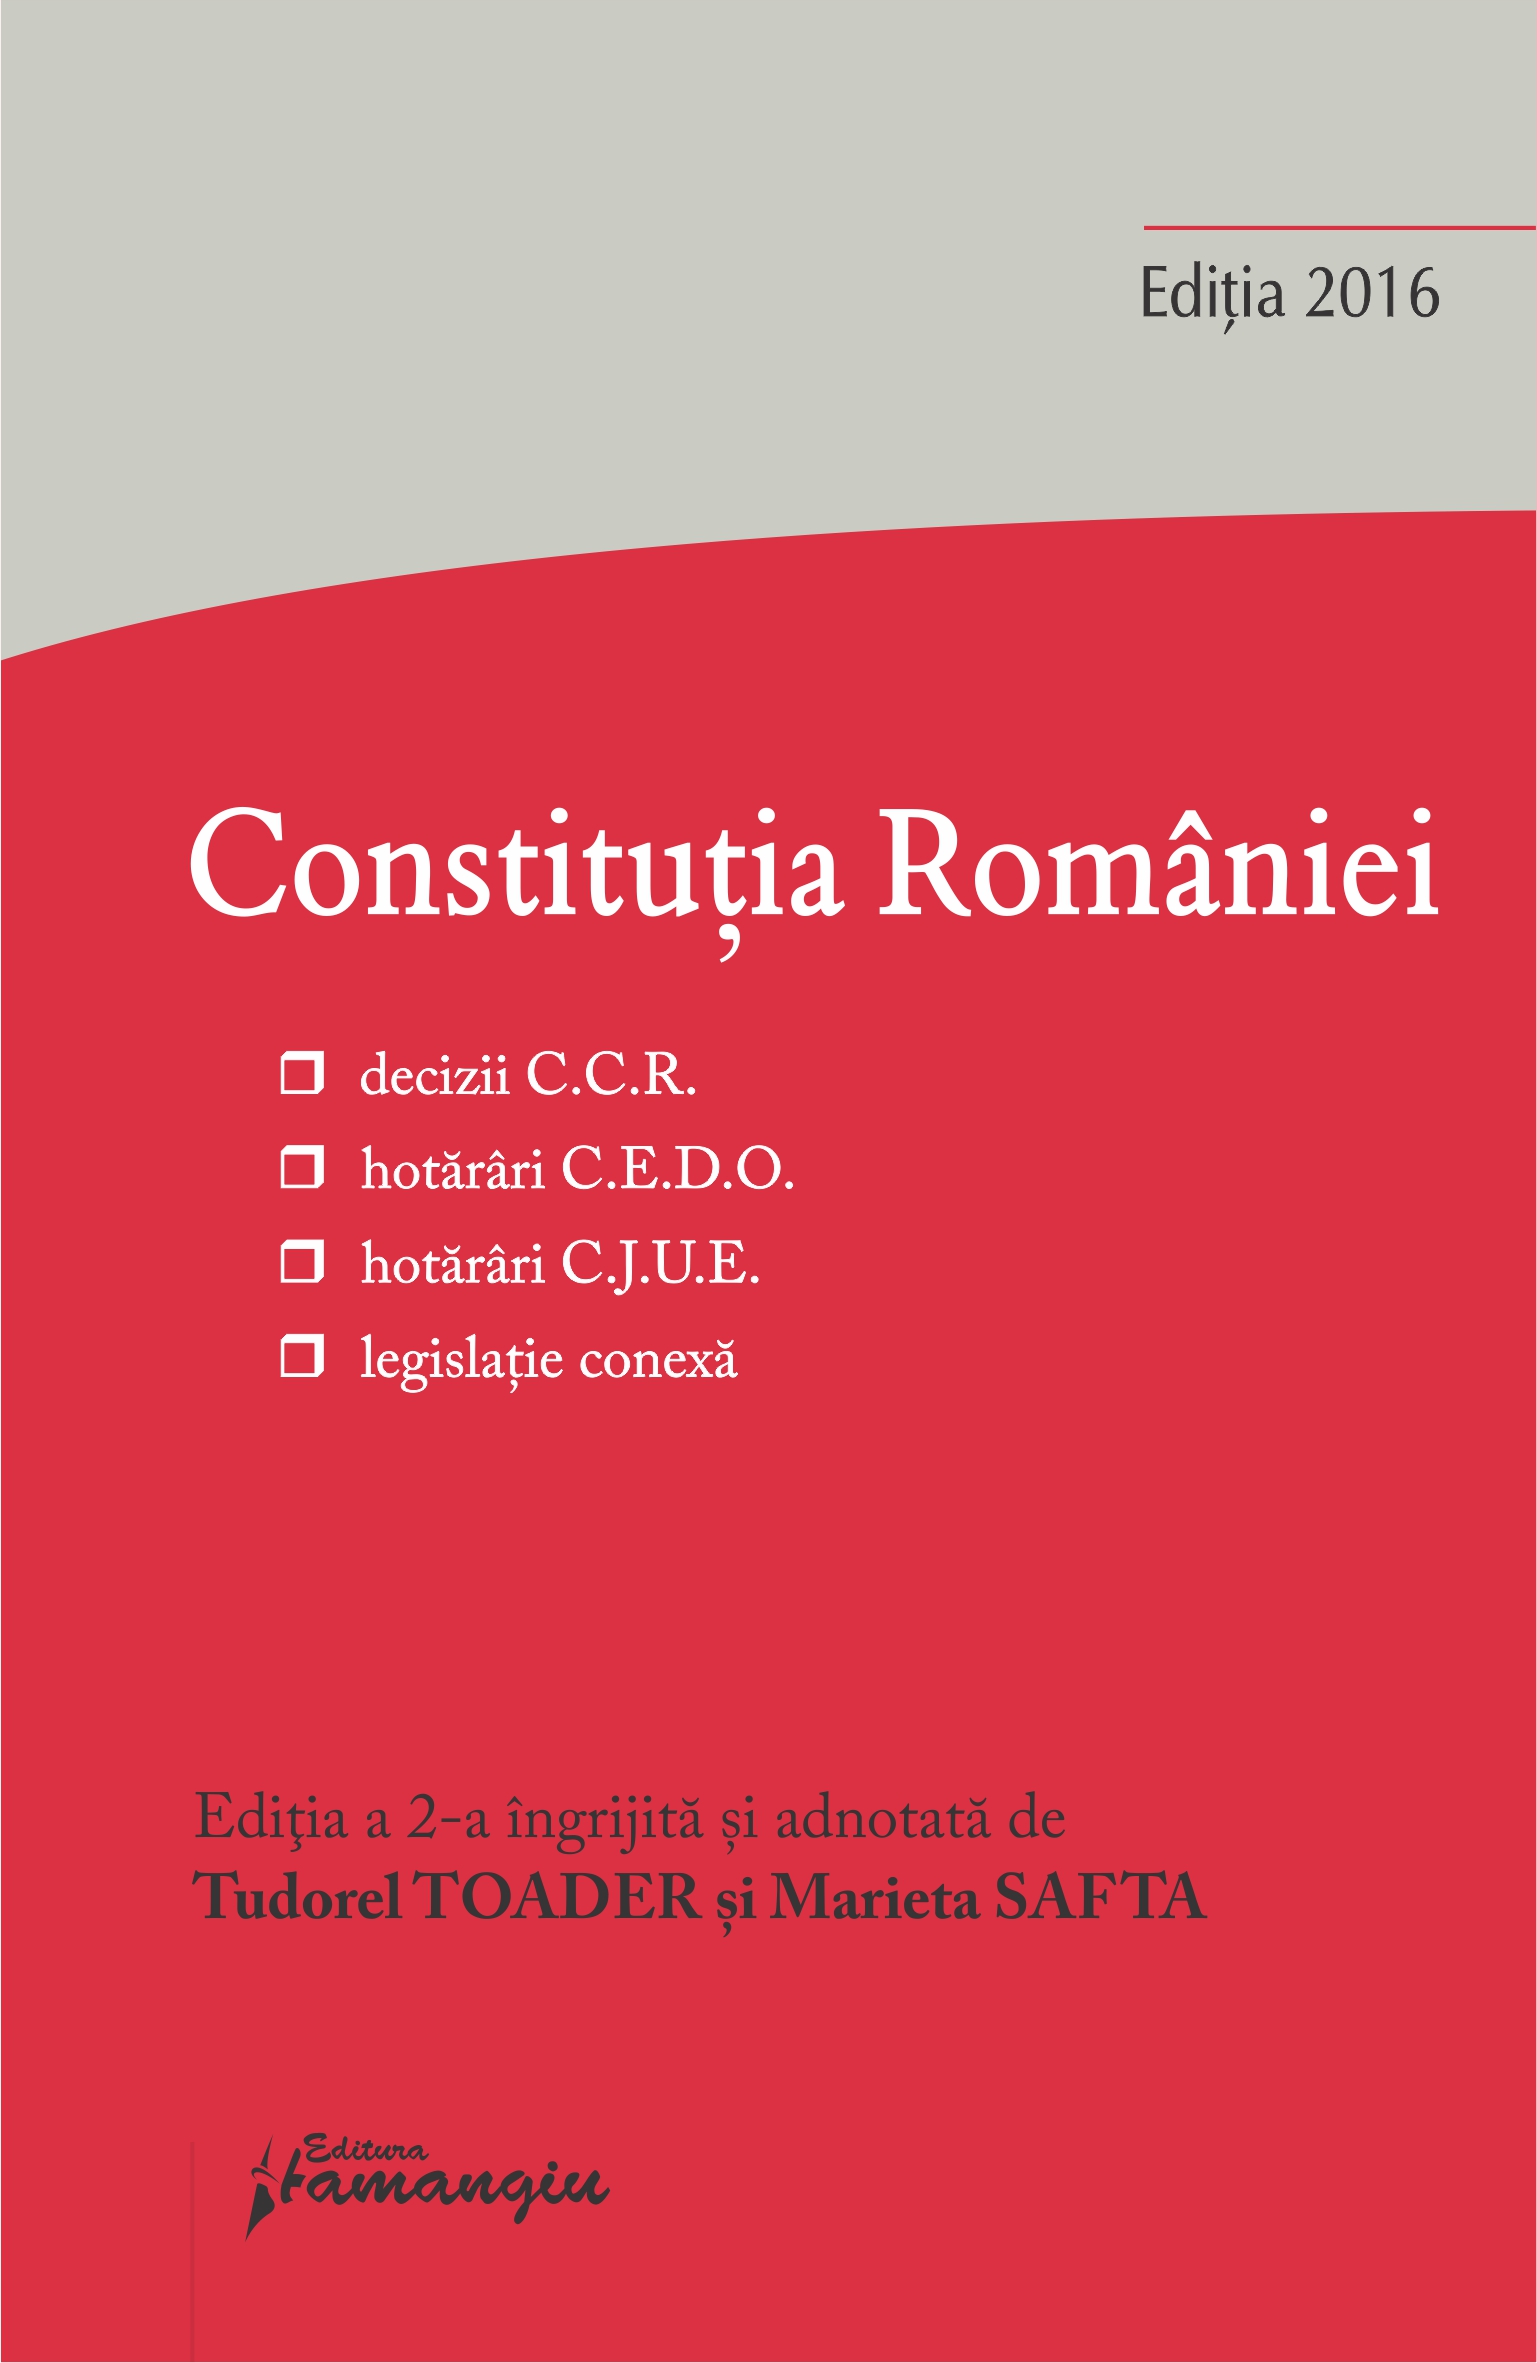 Constitutia Romaniei Ed. 2. Actualizata 14 octombrie 2016